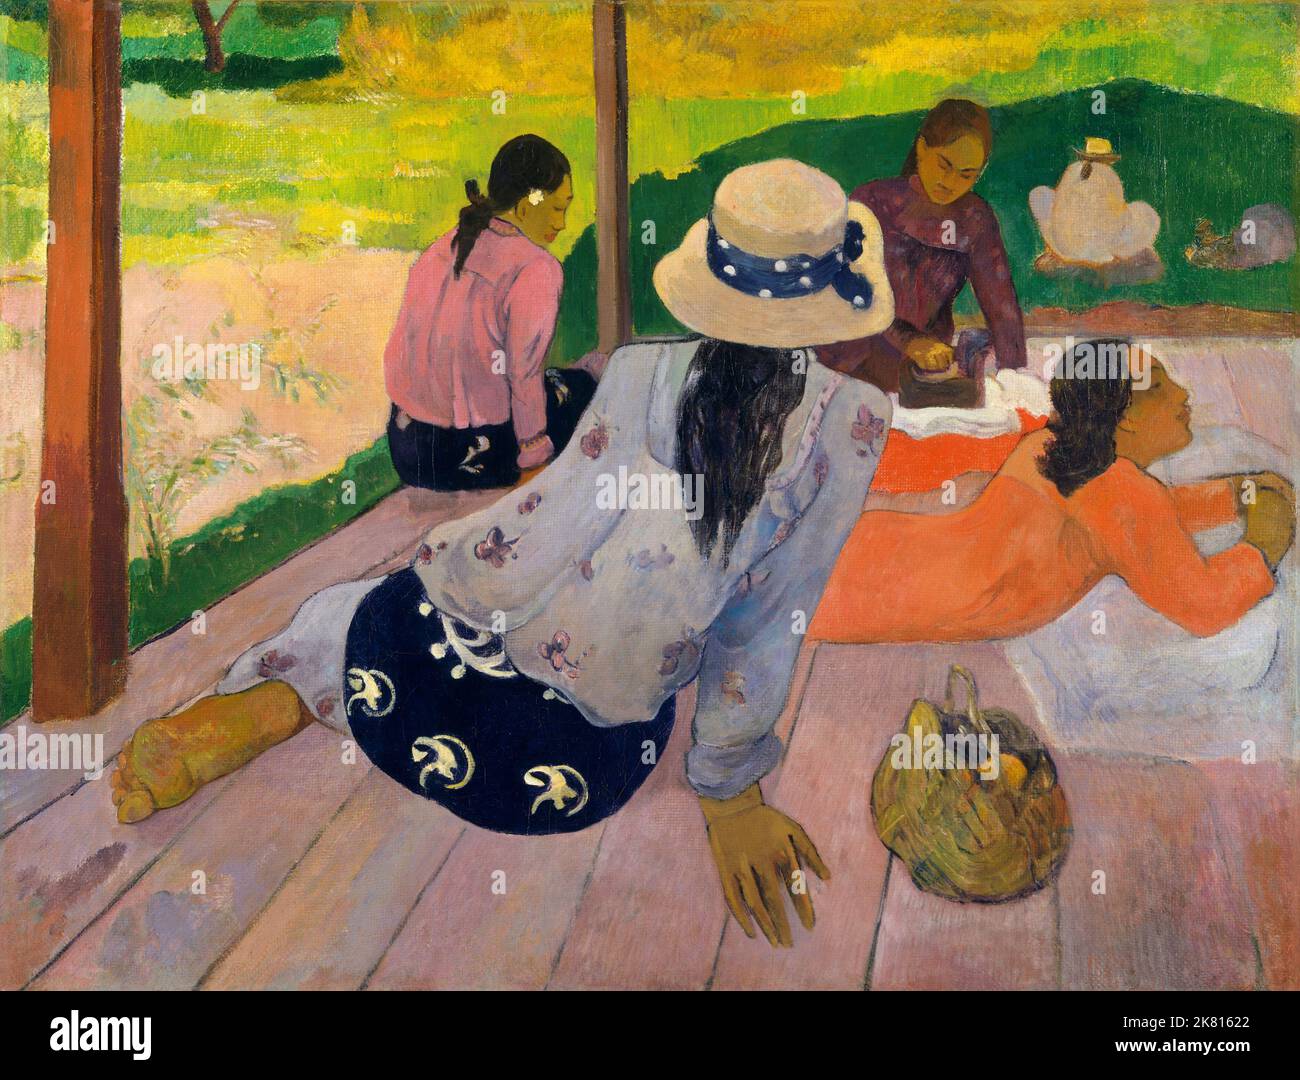 Tahiti: 'La Sieste' (la Siesta). Dipinto a olio su tela di Paul Gauguin (7 giugno 1848 - 8 maggio 1903), c.. 1892-1894. Paul Gauguin nacque a Parigi nel 1848 e trascorse la sua infanzia in Perù. Lavorò come agente di cambio con poco successo, e soffrì di forti depressione. Dipinse anche lui. Nel 1891, Gauguin, frustrato dalla mancanza di riconoscimento in patria e dalla mancanza di difficoltà finanziaria, salì ai tropici per sfuggire alla civiltà europea e "tutto ciò che è artificiale e convenzionale”. Il suo tempo c'era un argomento di grande interesse sia allora che nei tempi moderni. Foto Stock